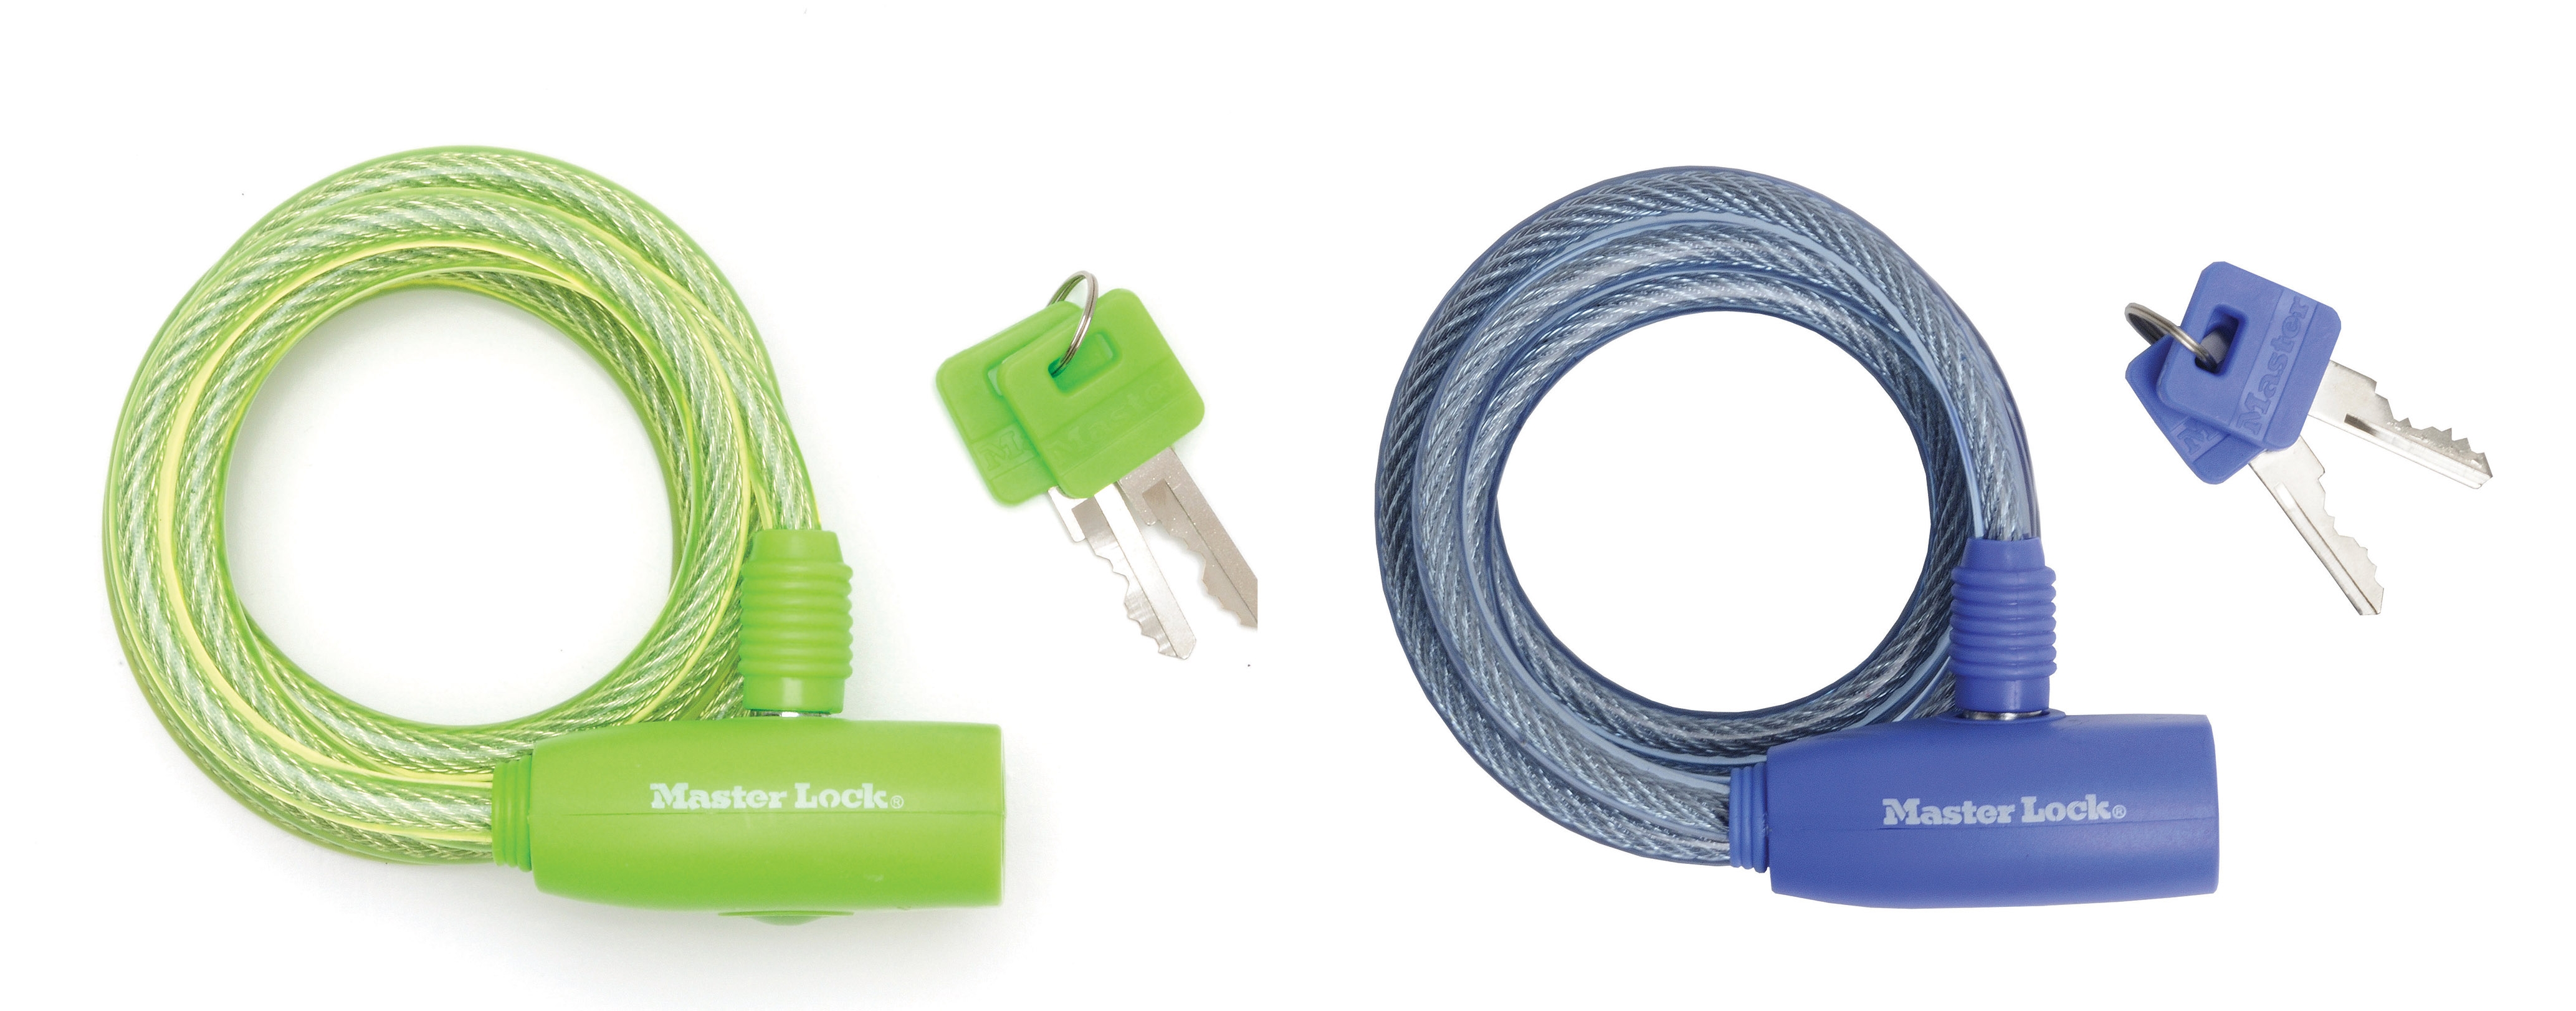 Antifurt Master Lock cablu spiralat cu cheie 1.80m x 8 mm – diverse culori